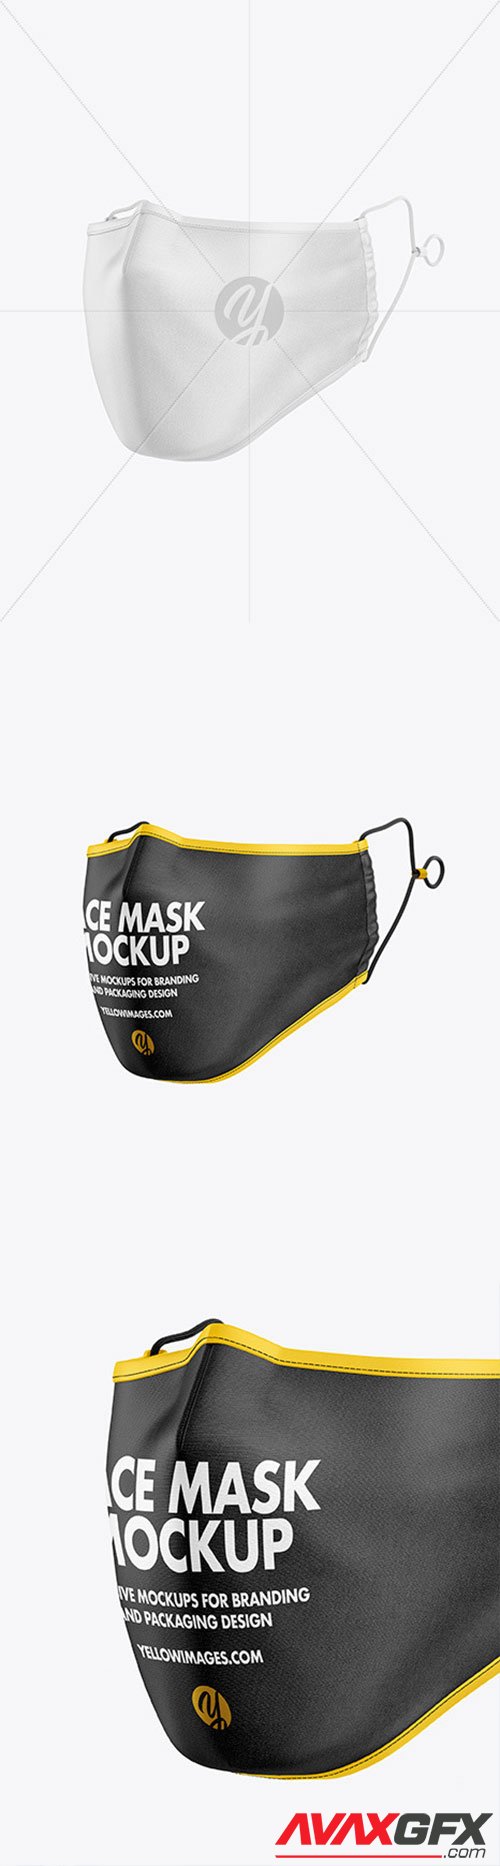 Face Mask Mockup 64429